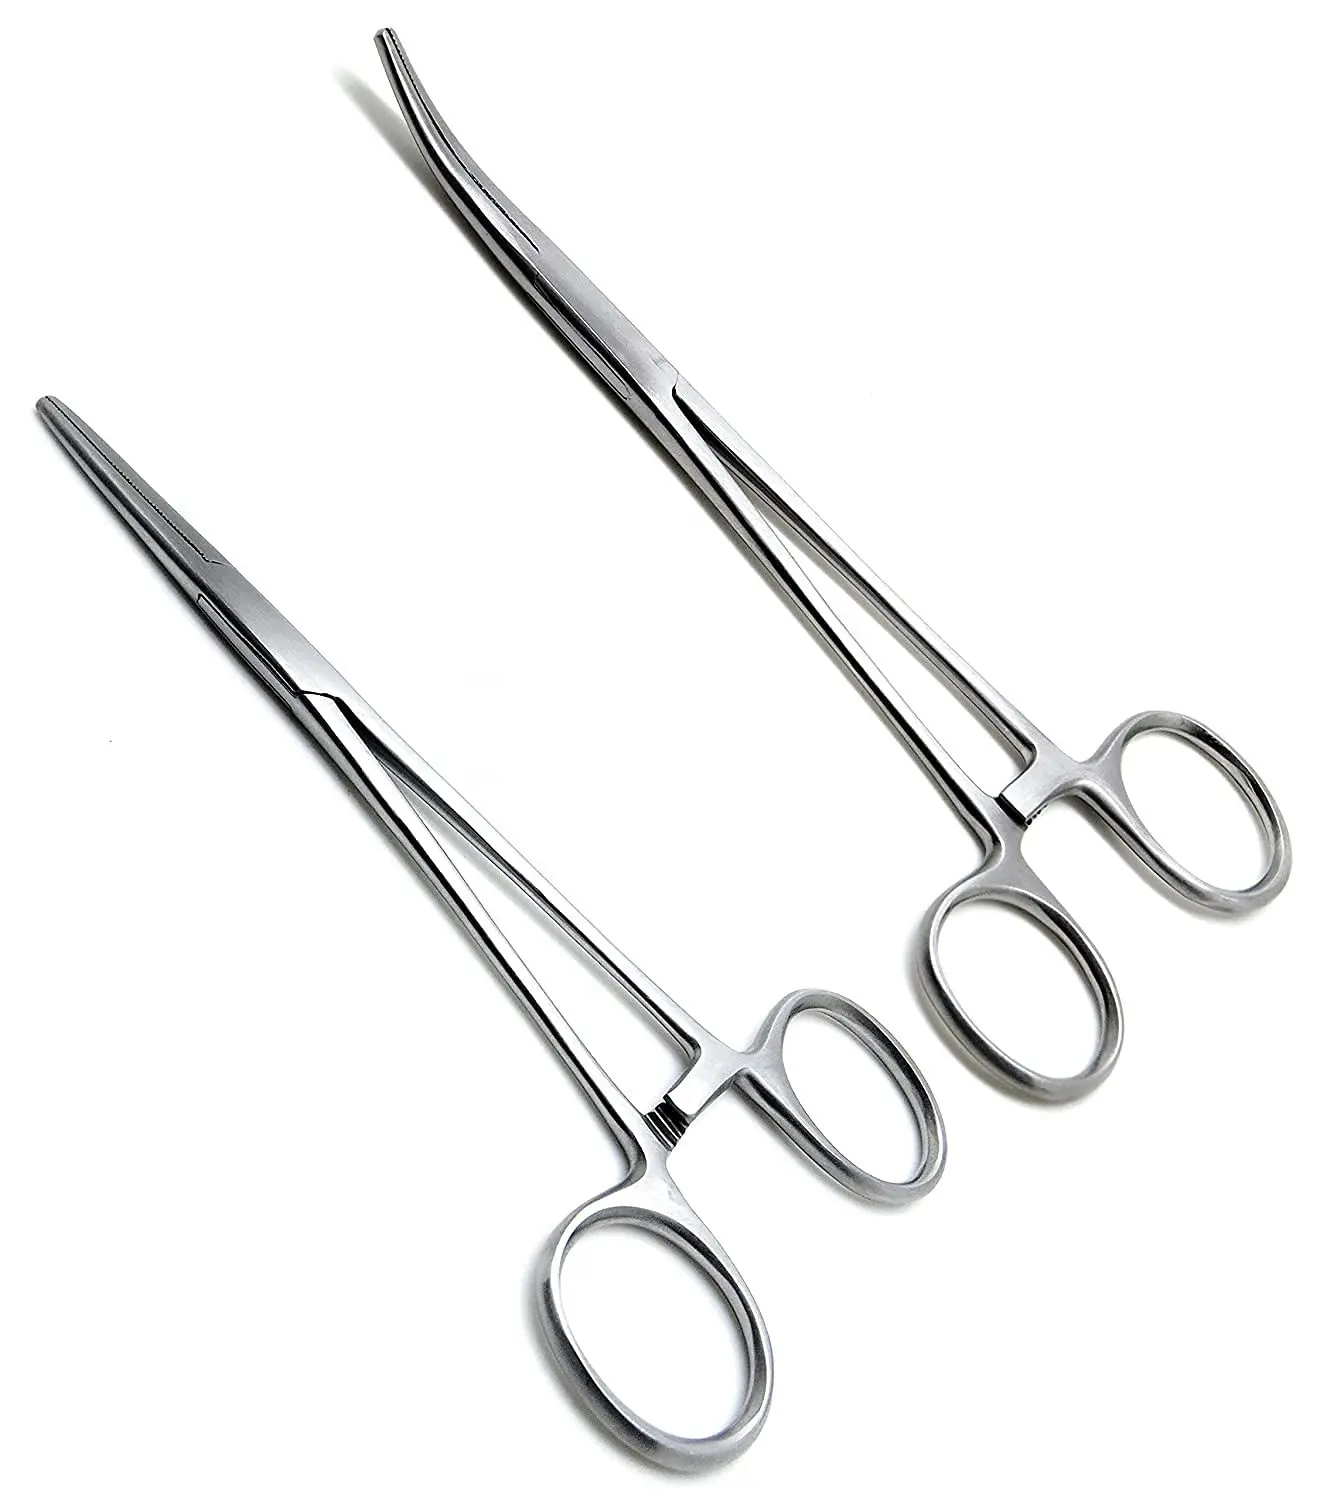 Pince hémostatique droite 6.5 pouces poignée de verrouillage Instruments chirurgicaux incurvés chirurgicaux allemands en acier inoxydable